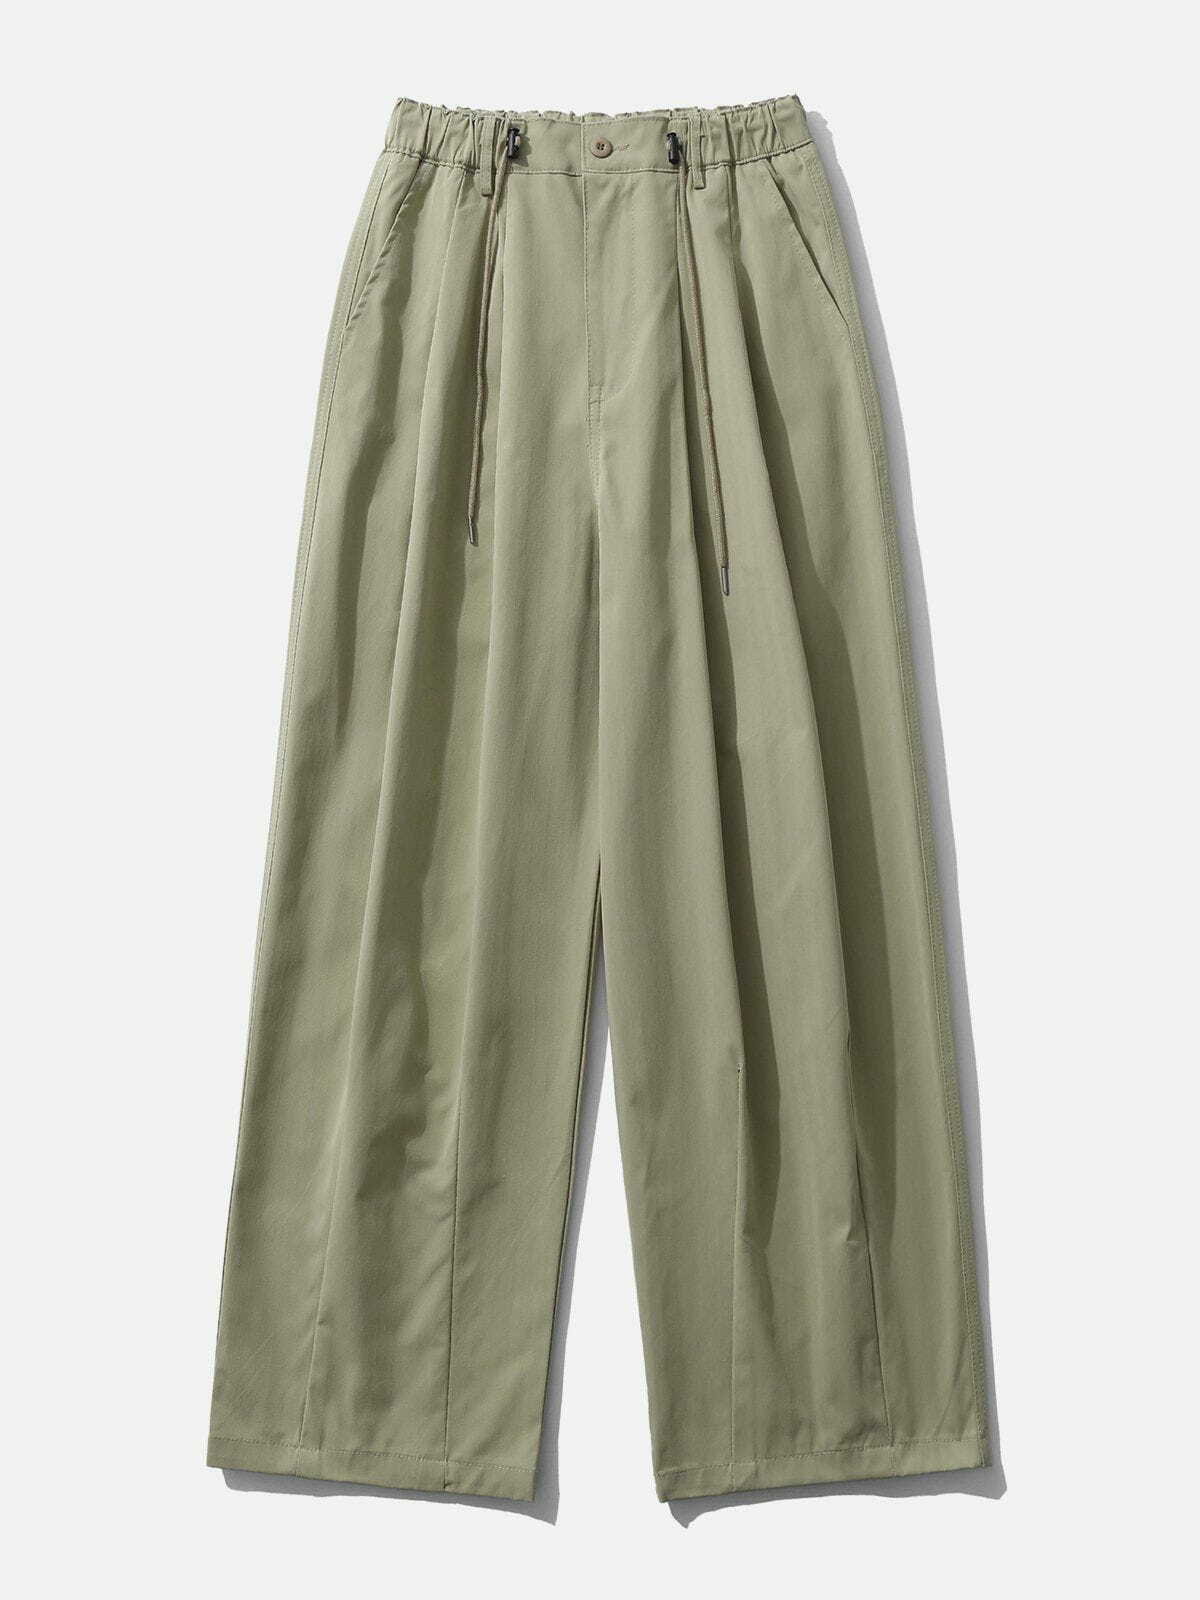 trendy multi wrinkle baggy pants dynamic streetwear look 5055